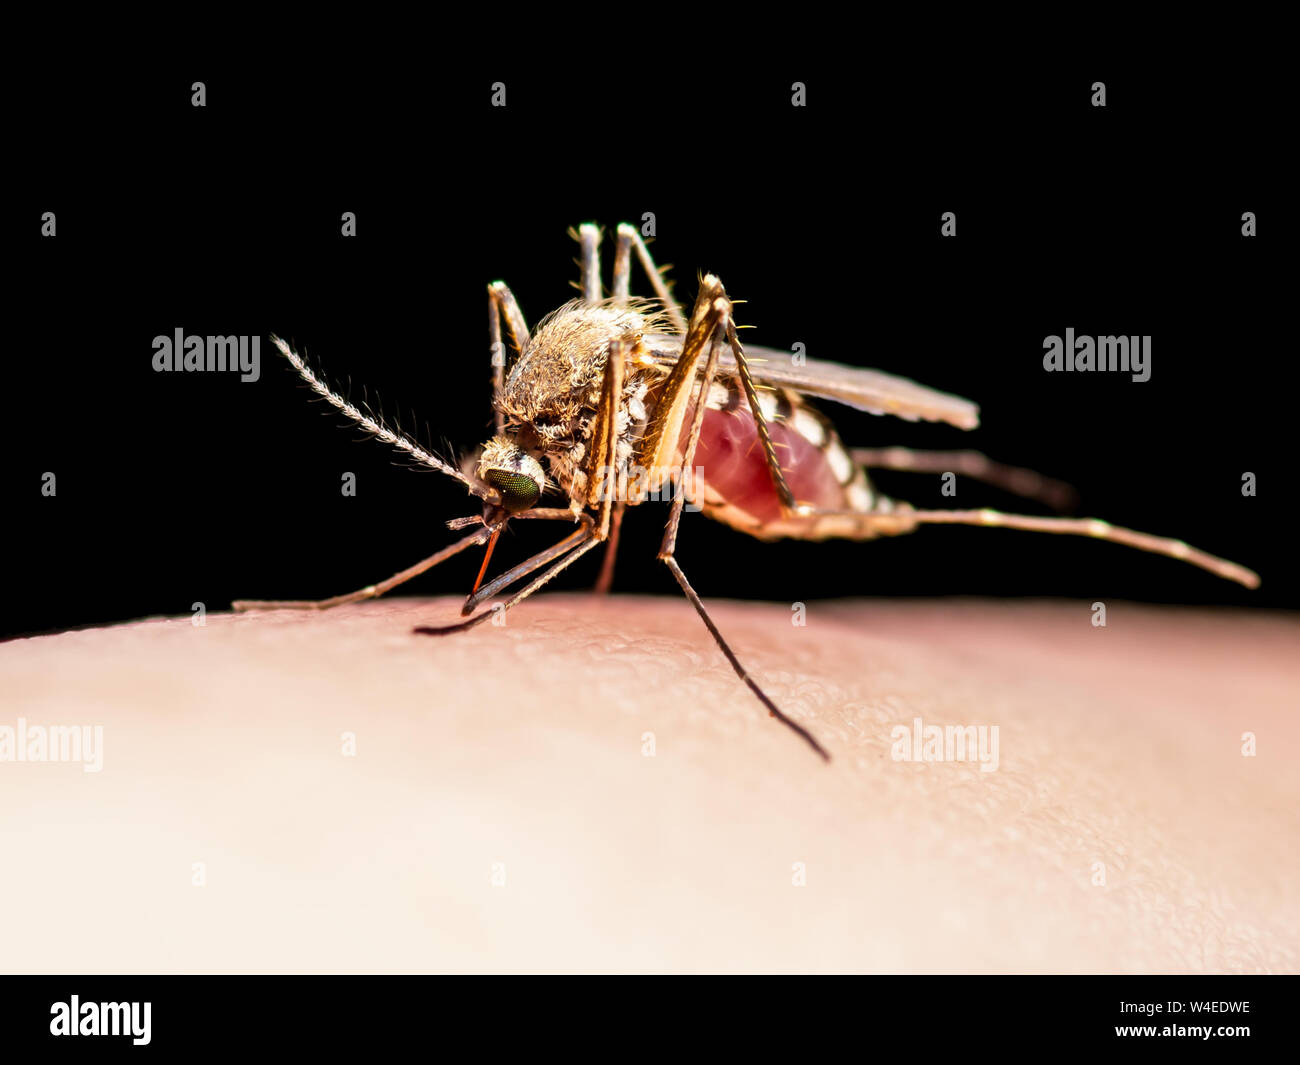 La febbre gialla, la malaria o Virus Zika zanzara infetta morso di insetto isolati su sfondo nero Foto Stock